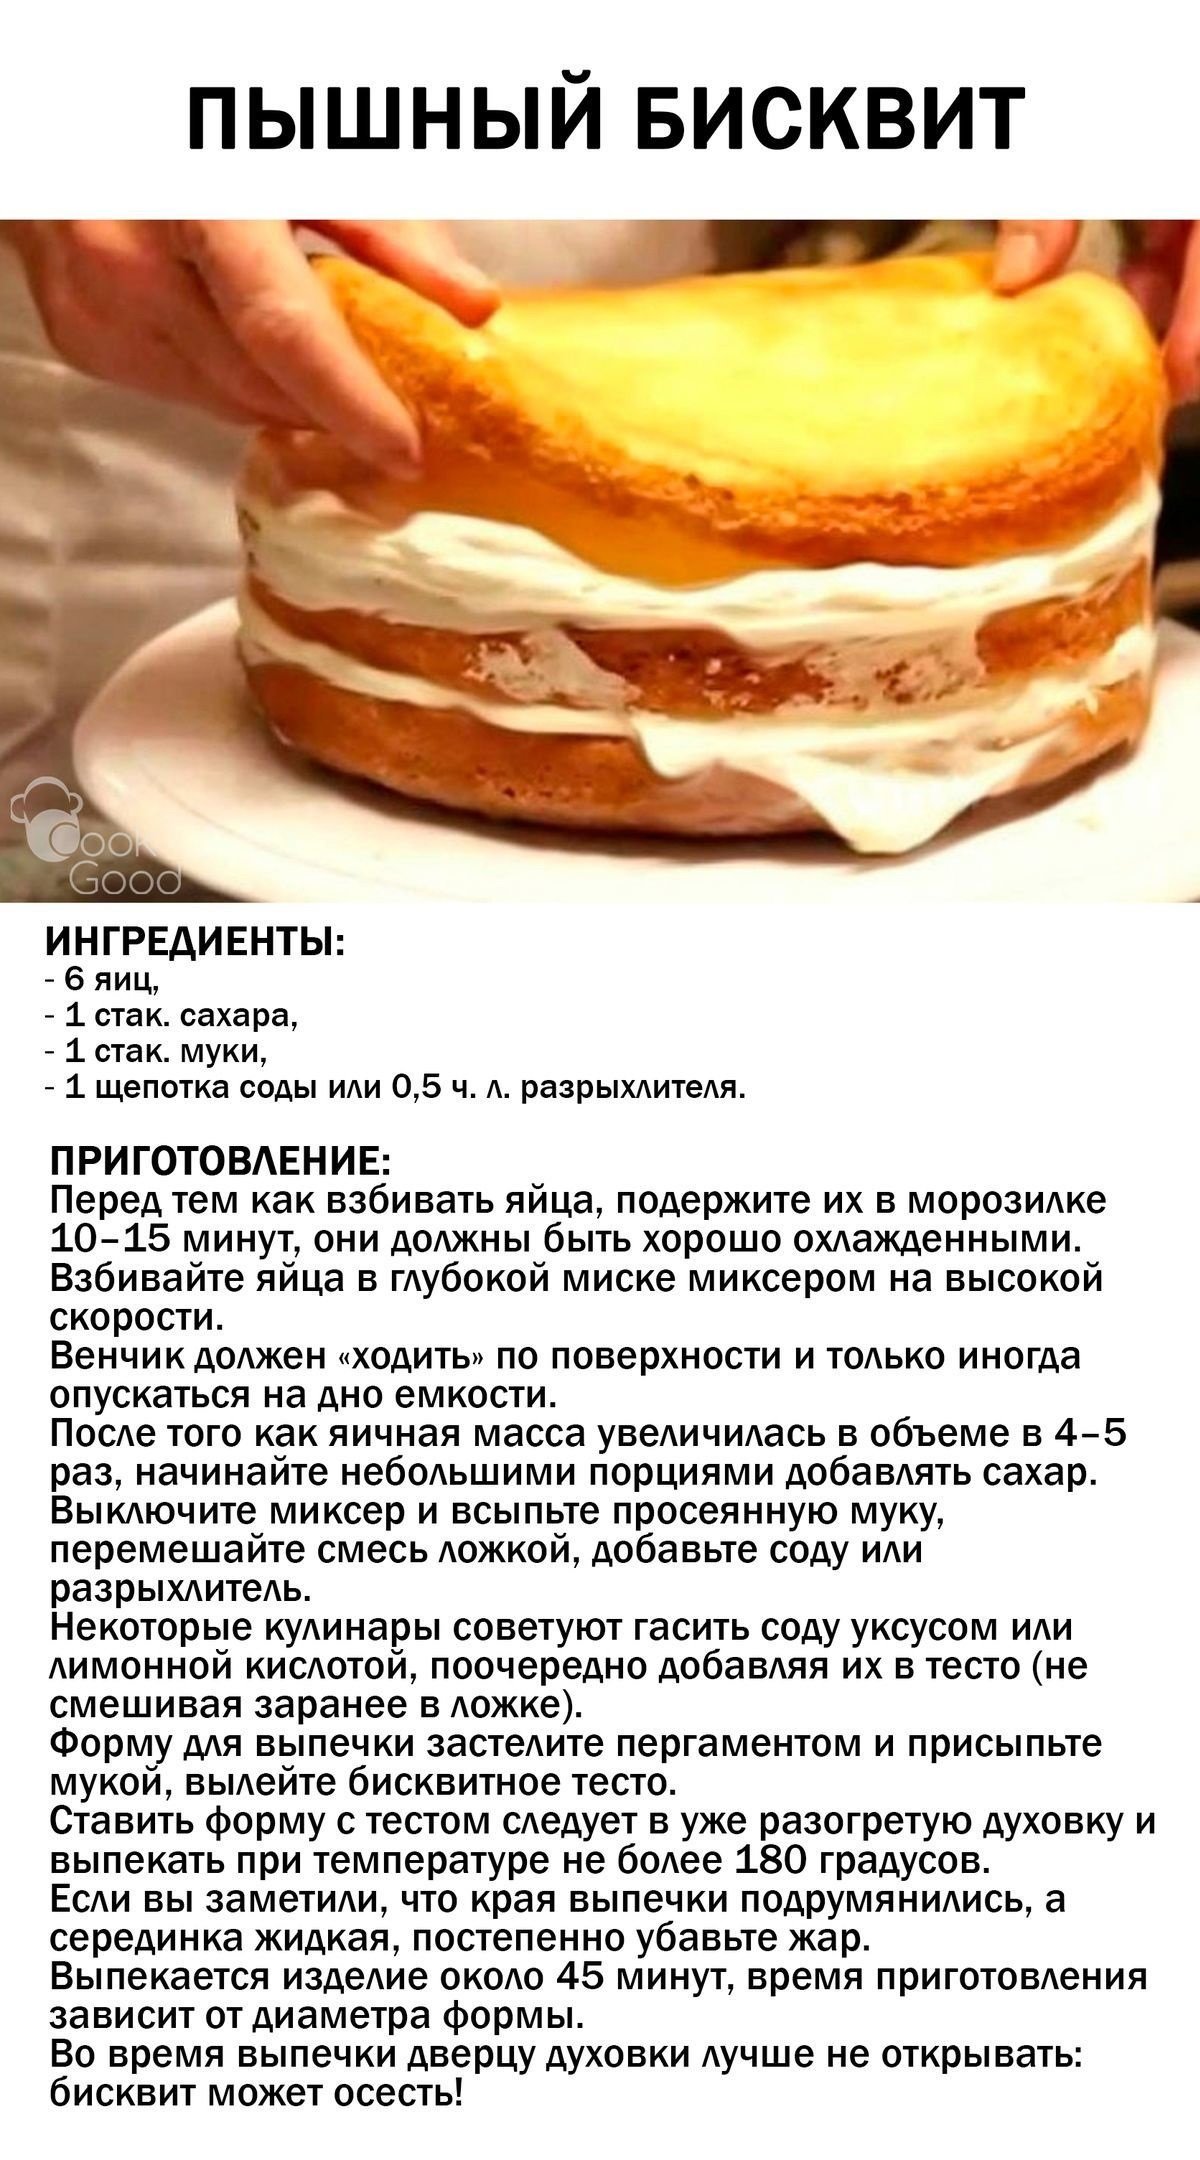 Испортится ли тесто. Рецепт приготовления бисквита для торта. Рецепт вкусного бисквита для торта в домашних. Рецепт бисквита для торта классический. Бисквит рецепт пышный.